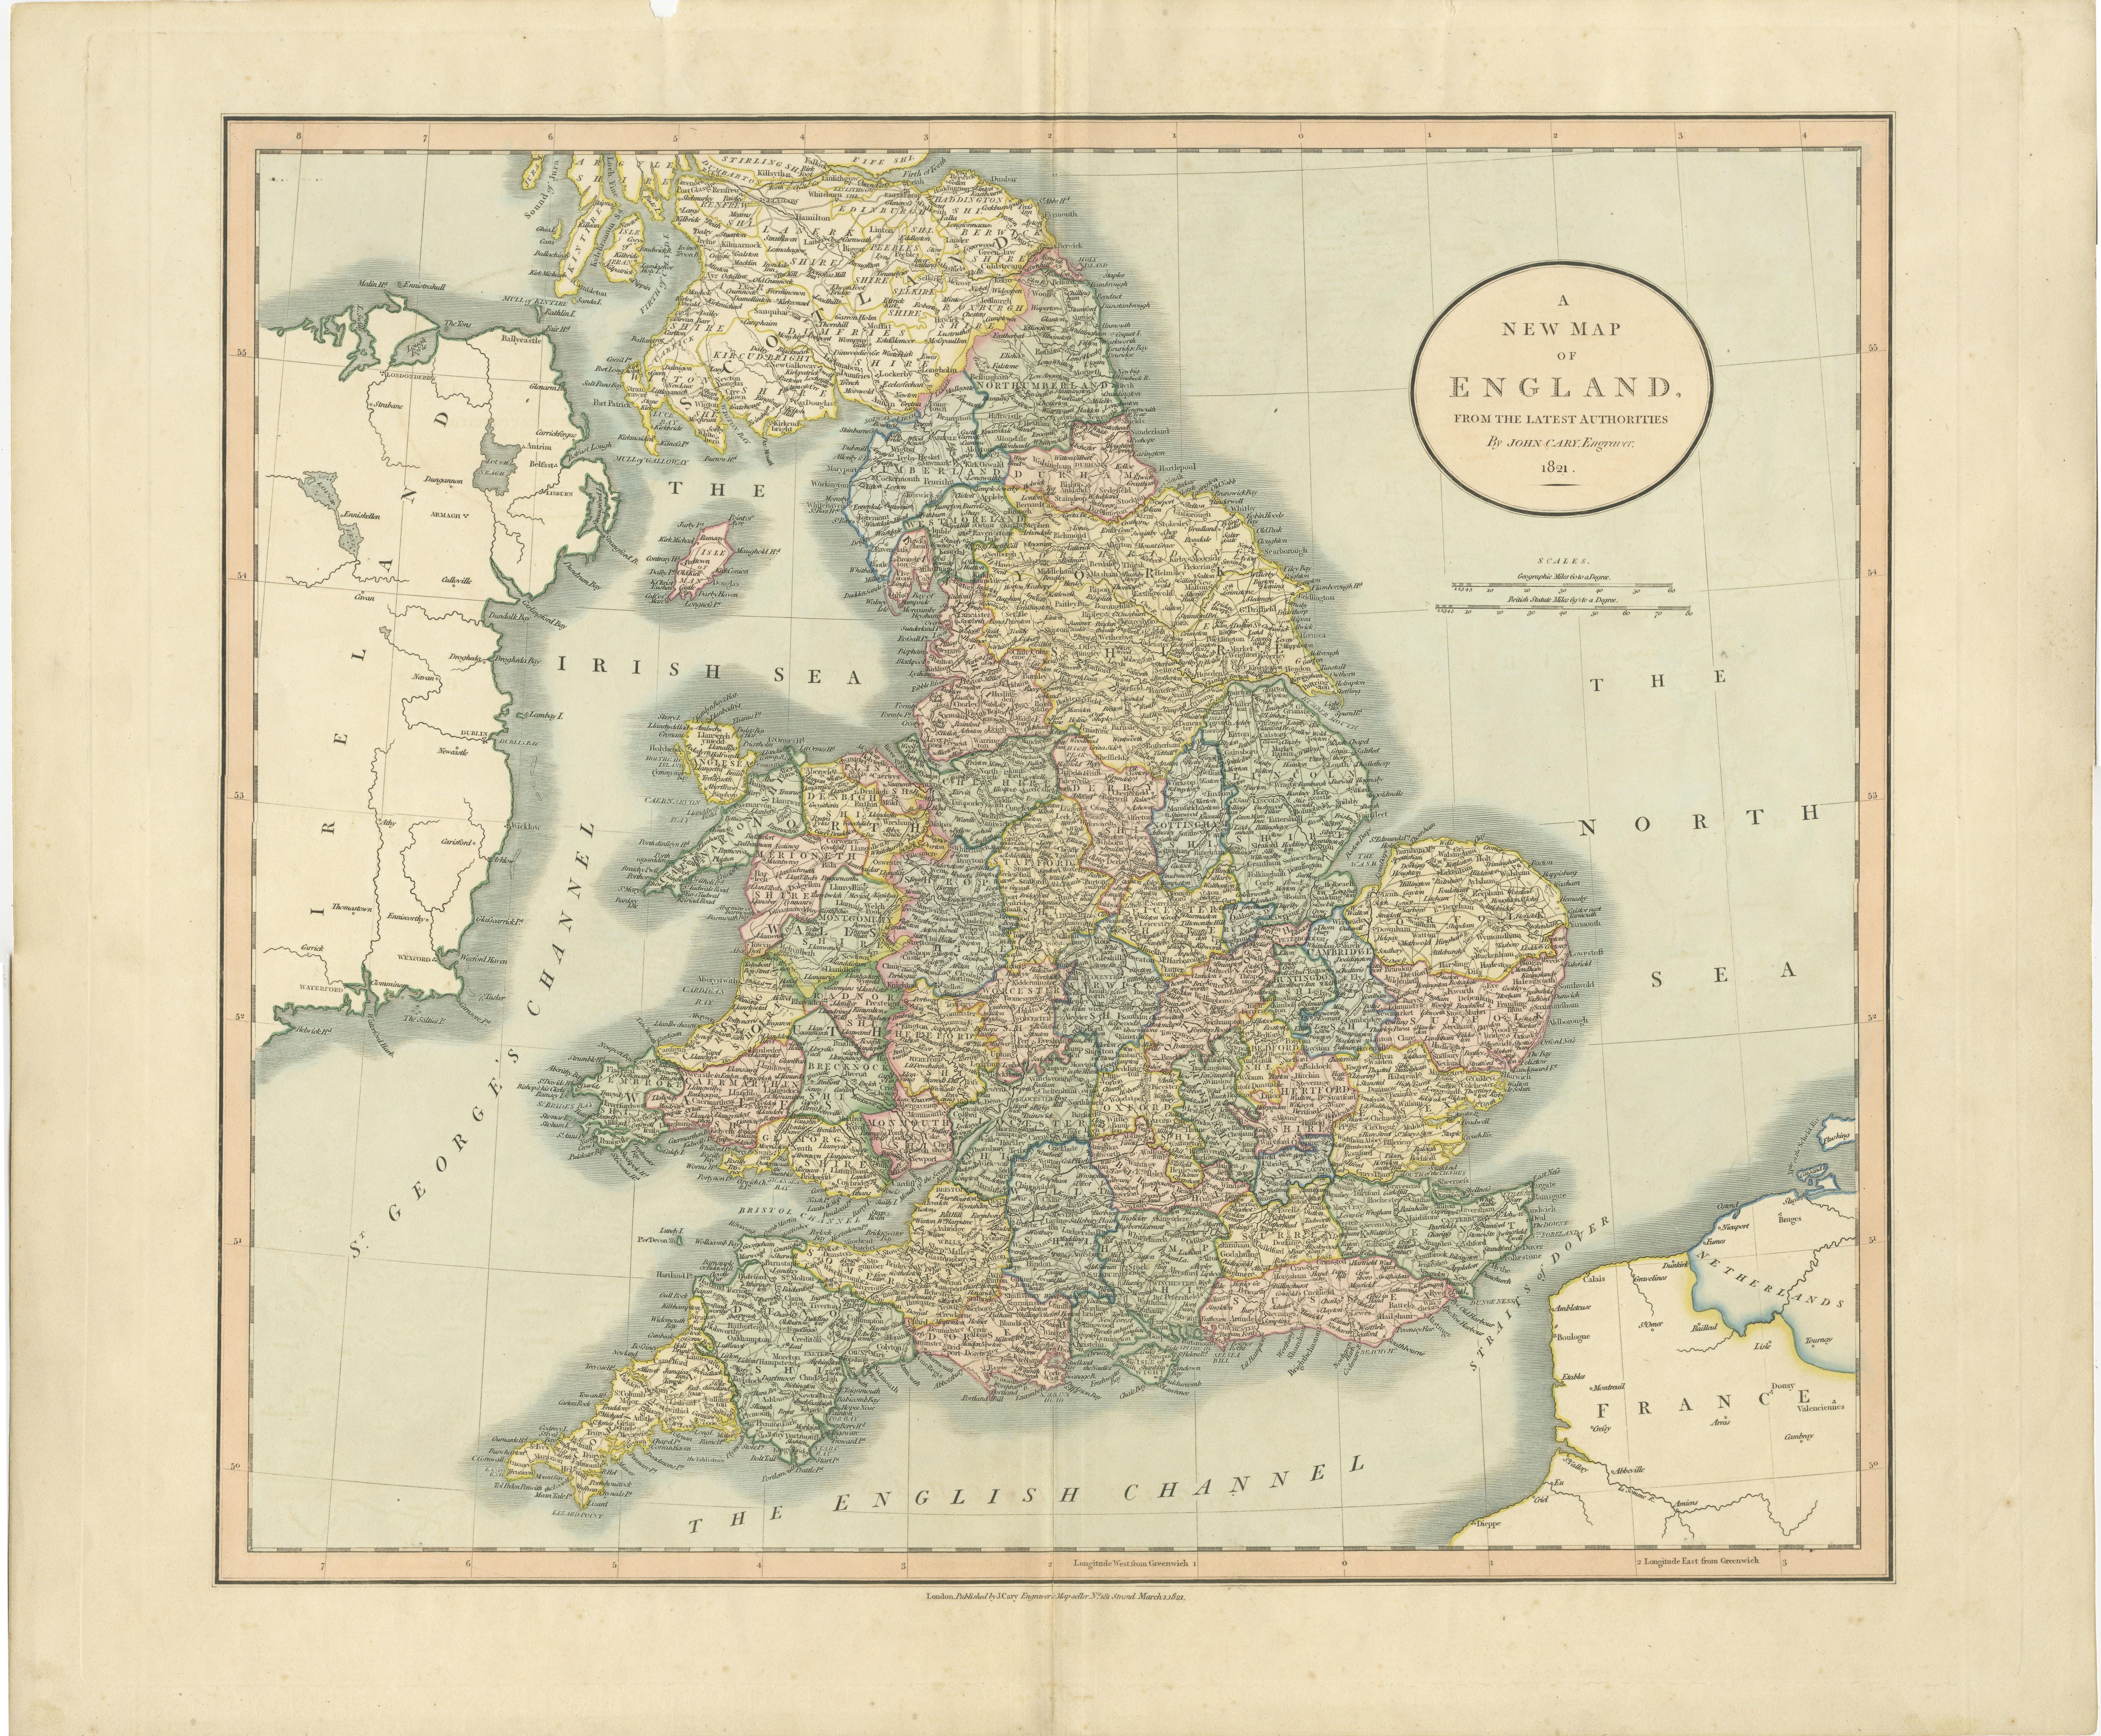 Carte ancienne intitulée 'A New Map of England from the latest Authorities'. Grande carte de l'Angleterre, coloriée à la main par comtés. Publié par John Cary's, 1821. 

John Cary (1755-1835) était un cartographe et éditeur britannique surtout connu